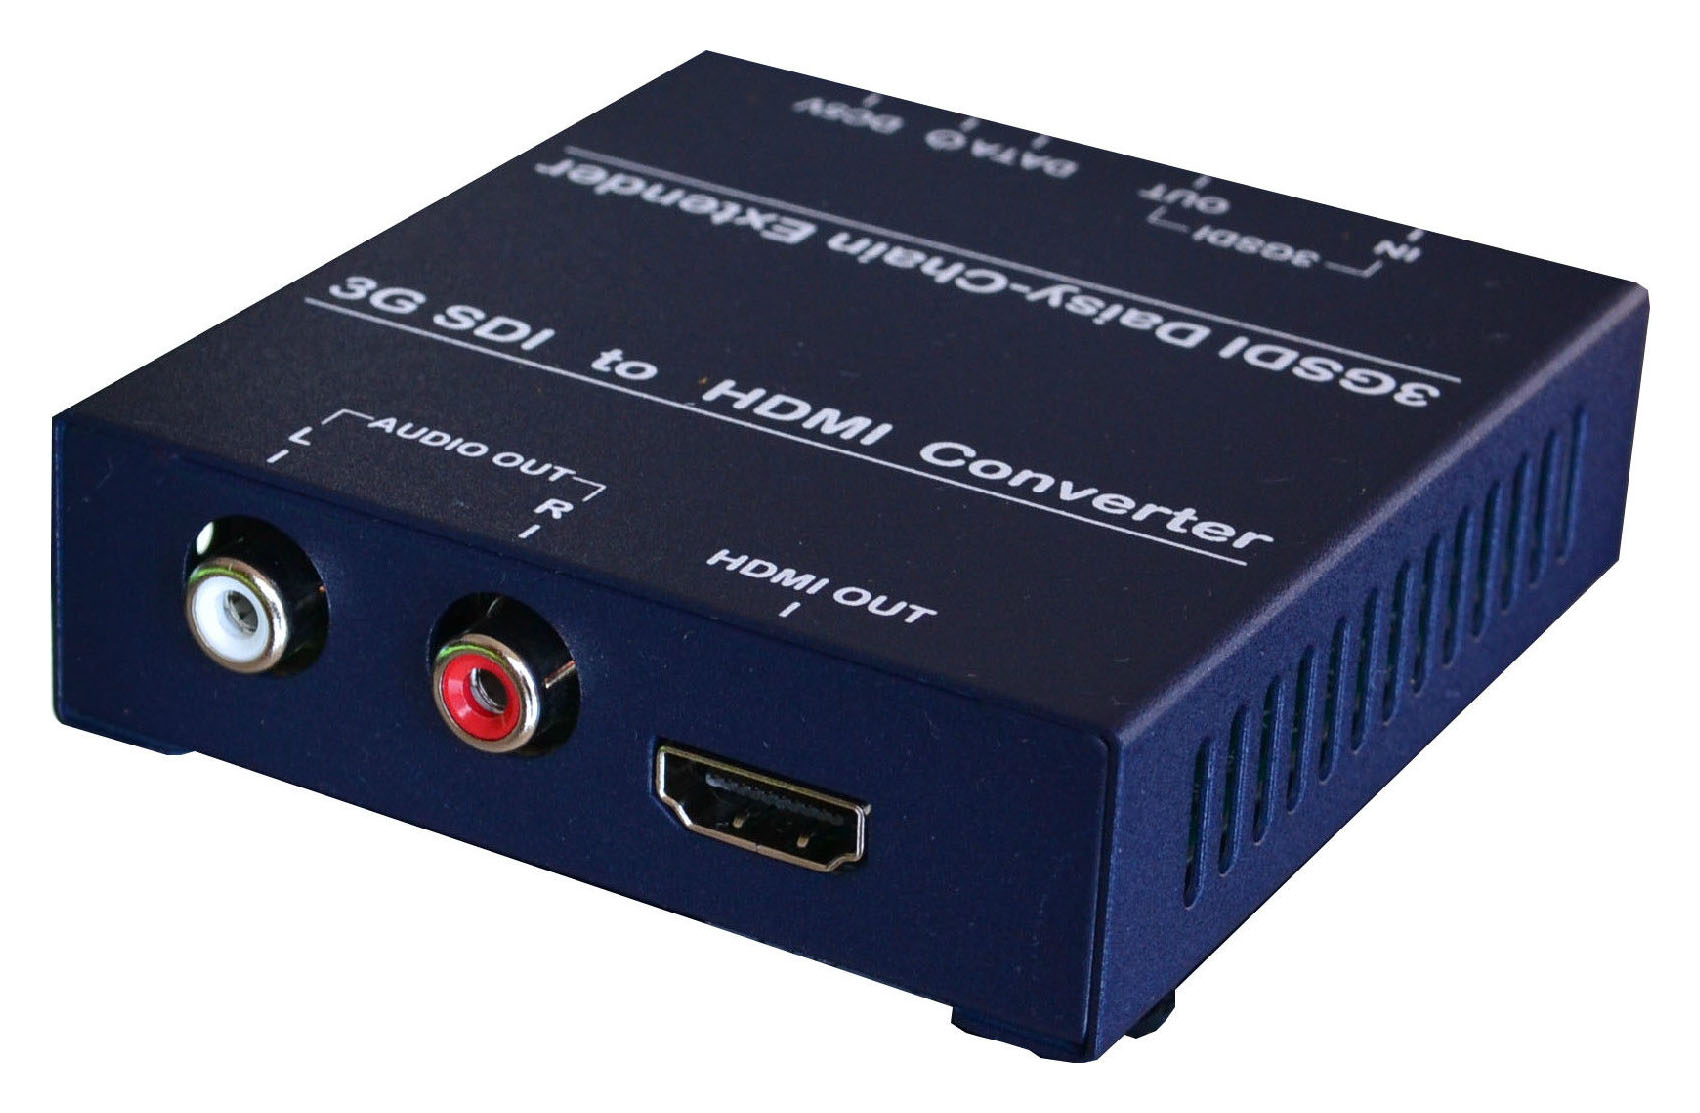 HD-SDI转HDMI转换器工作原理及功能介绍